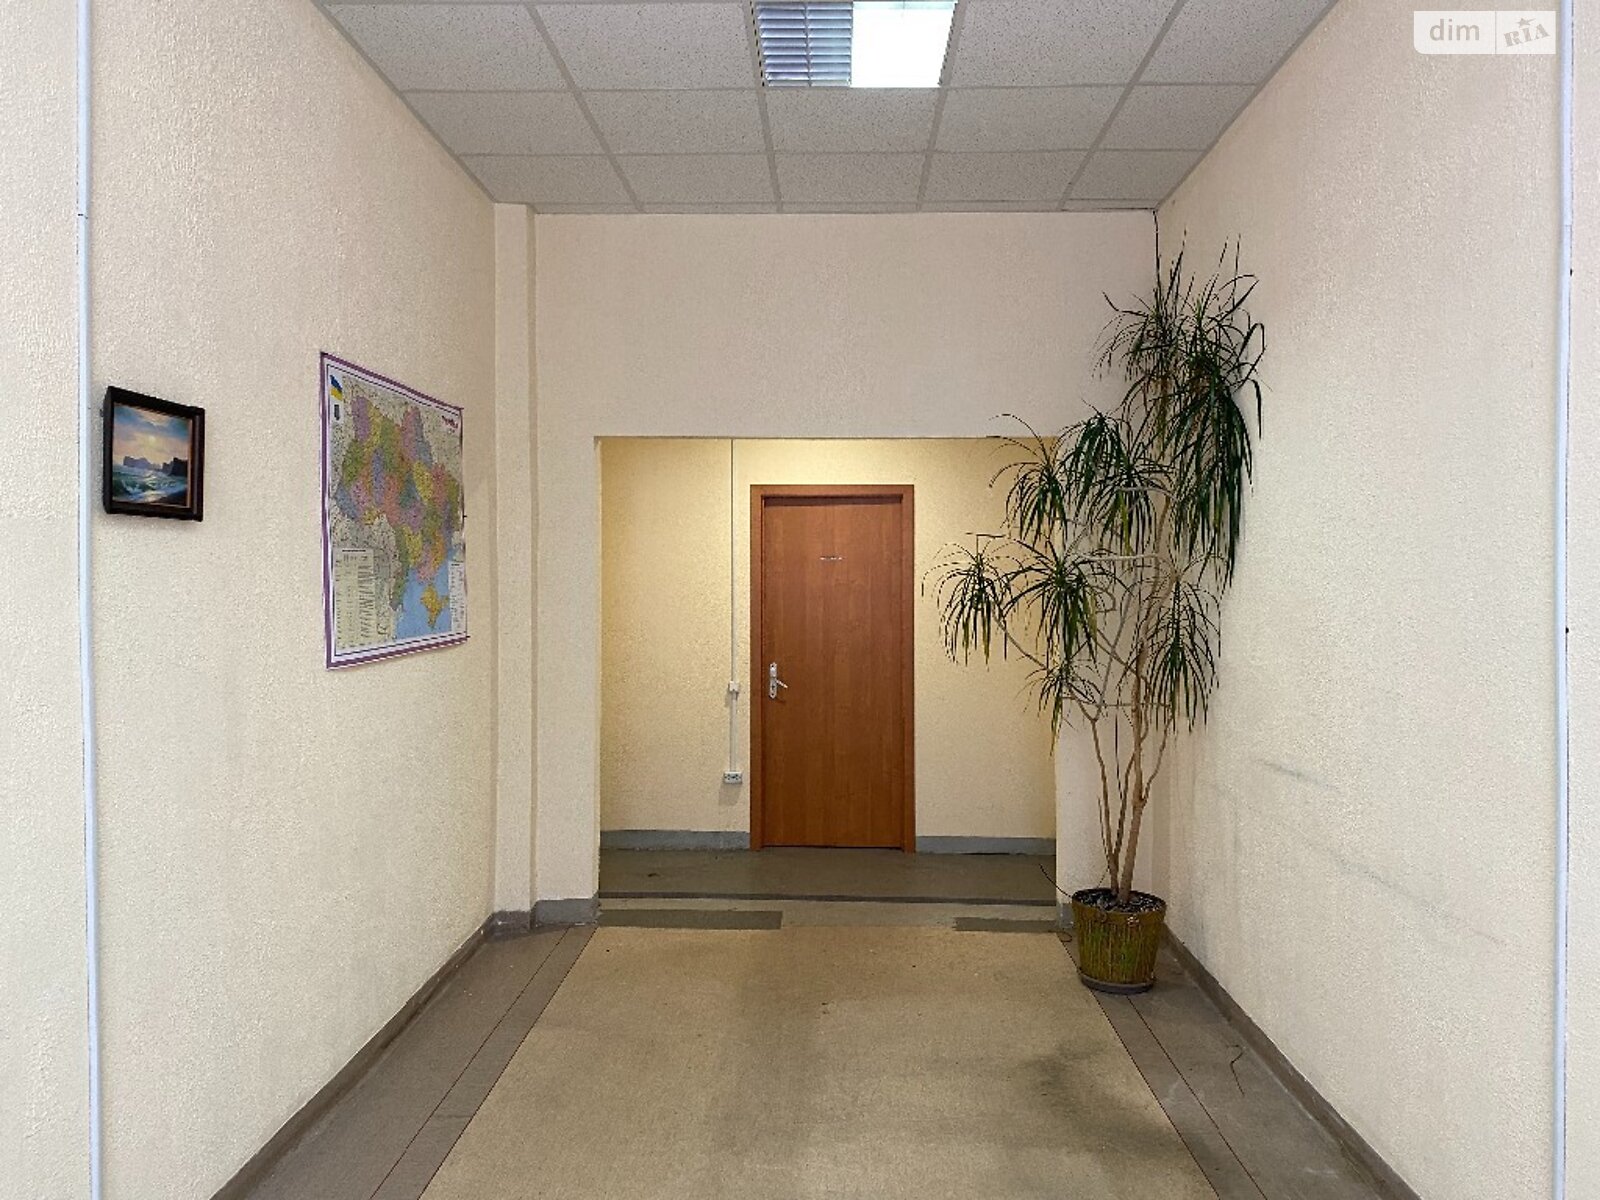 Аренда офисного помещения в Днепре, Ольги княгини улица 22, помещений - 1, этаж - 1 фото 1